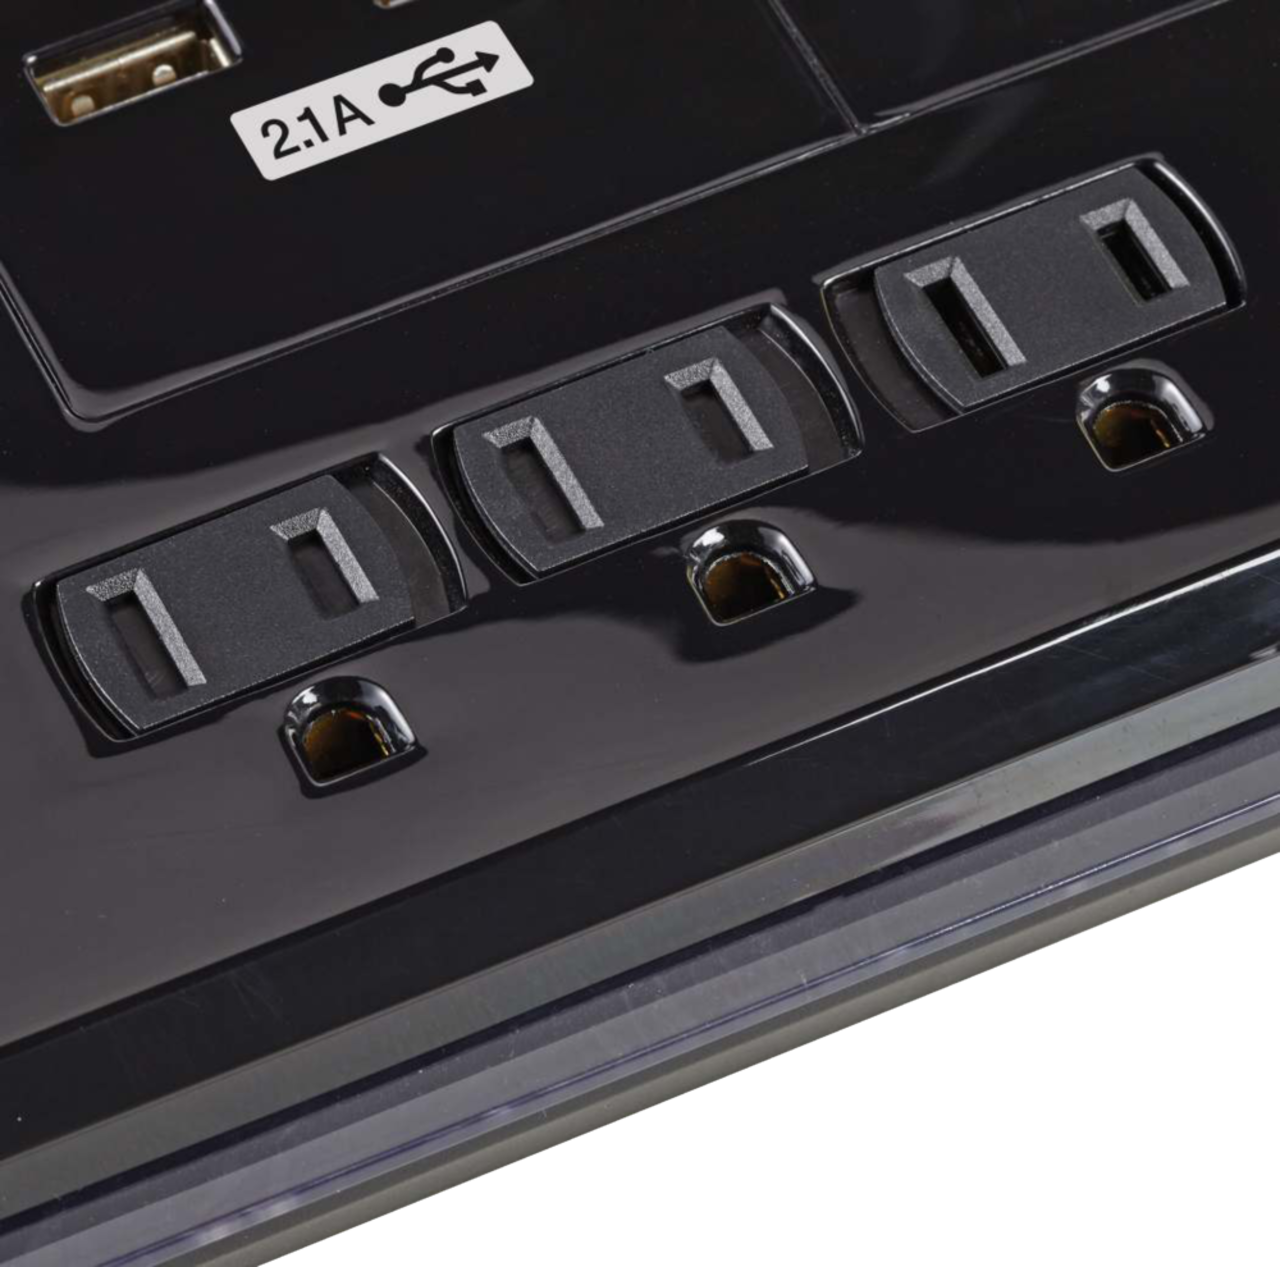 Barre d'alimentation NOMA à 4 prises, 2 ports de chargement USB et USB-C